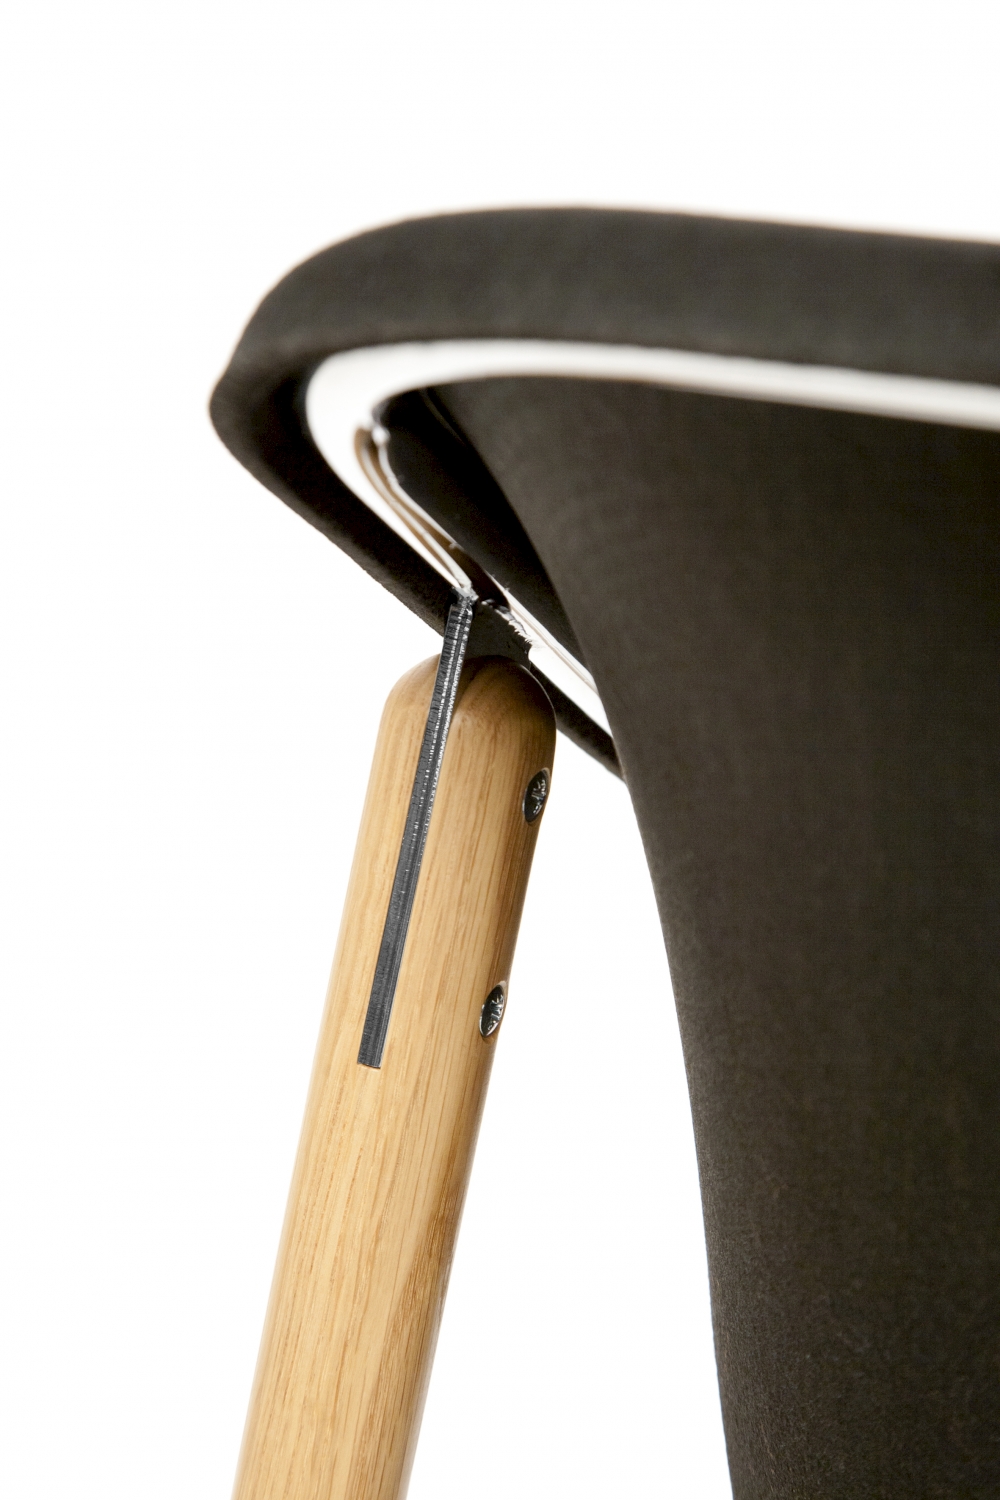 Kola Light Wood Chair. Designed for Inno by Mikko Laakkonen.